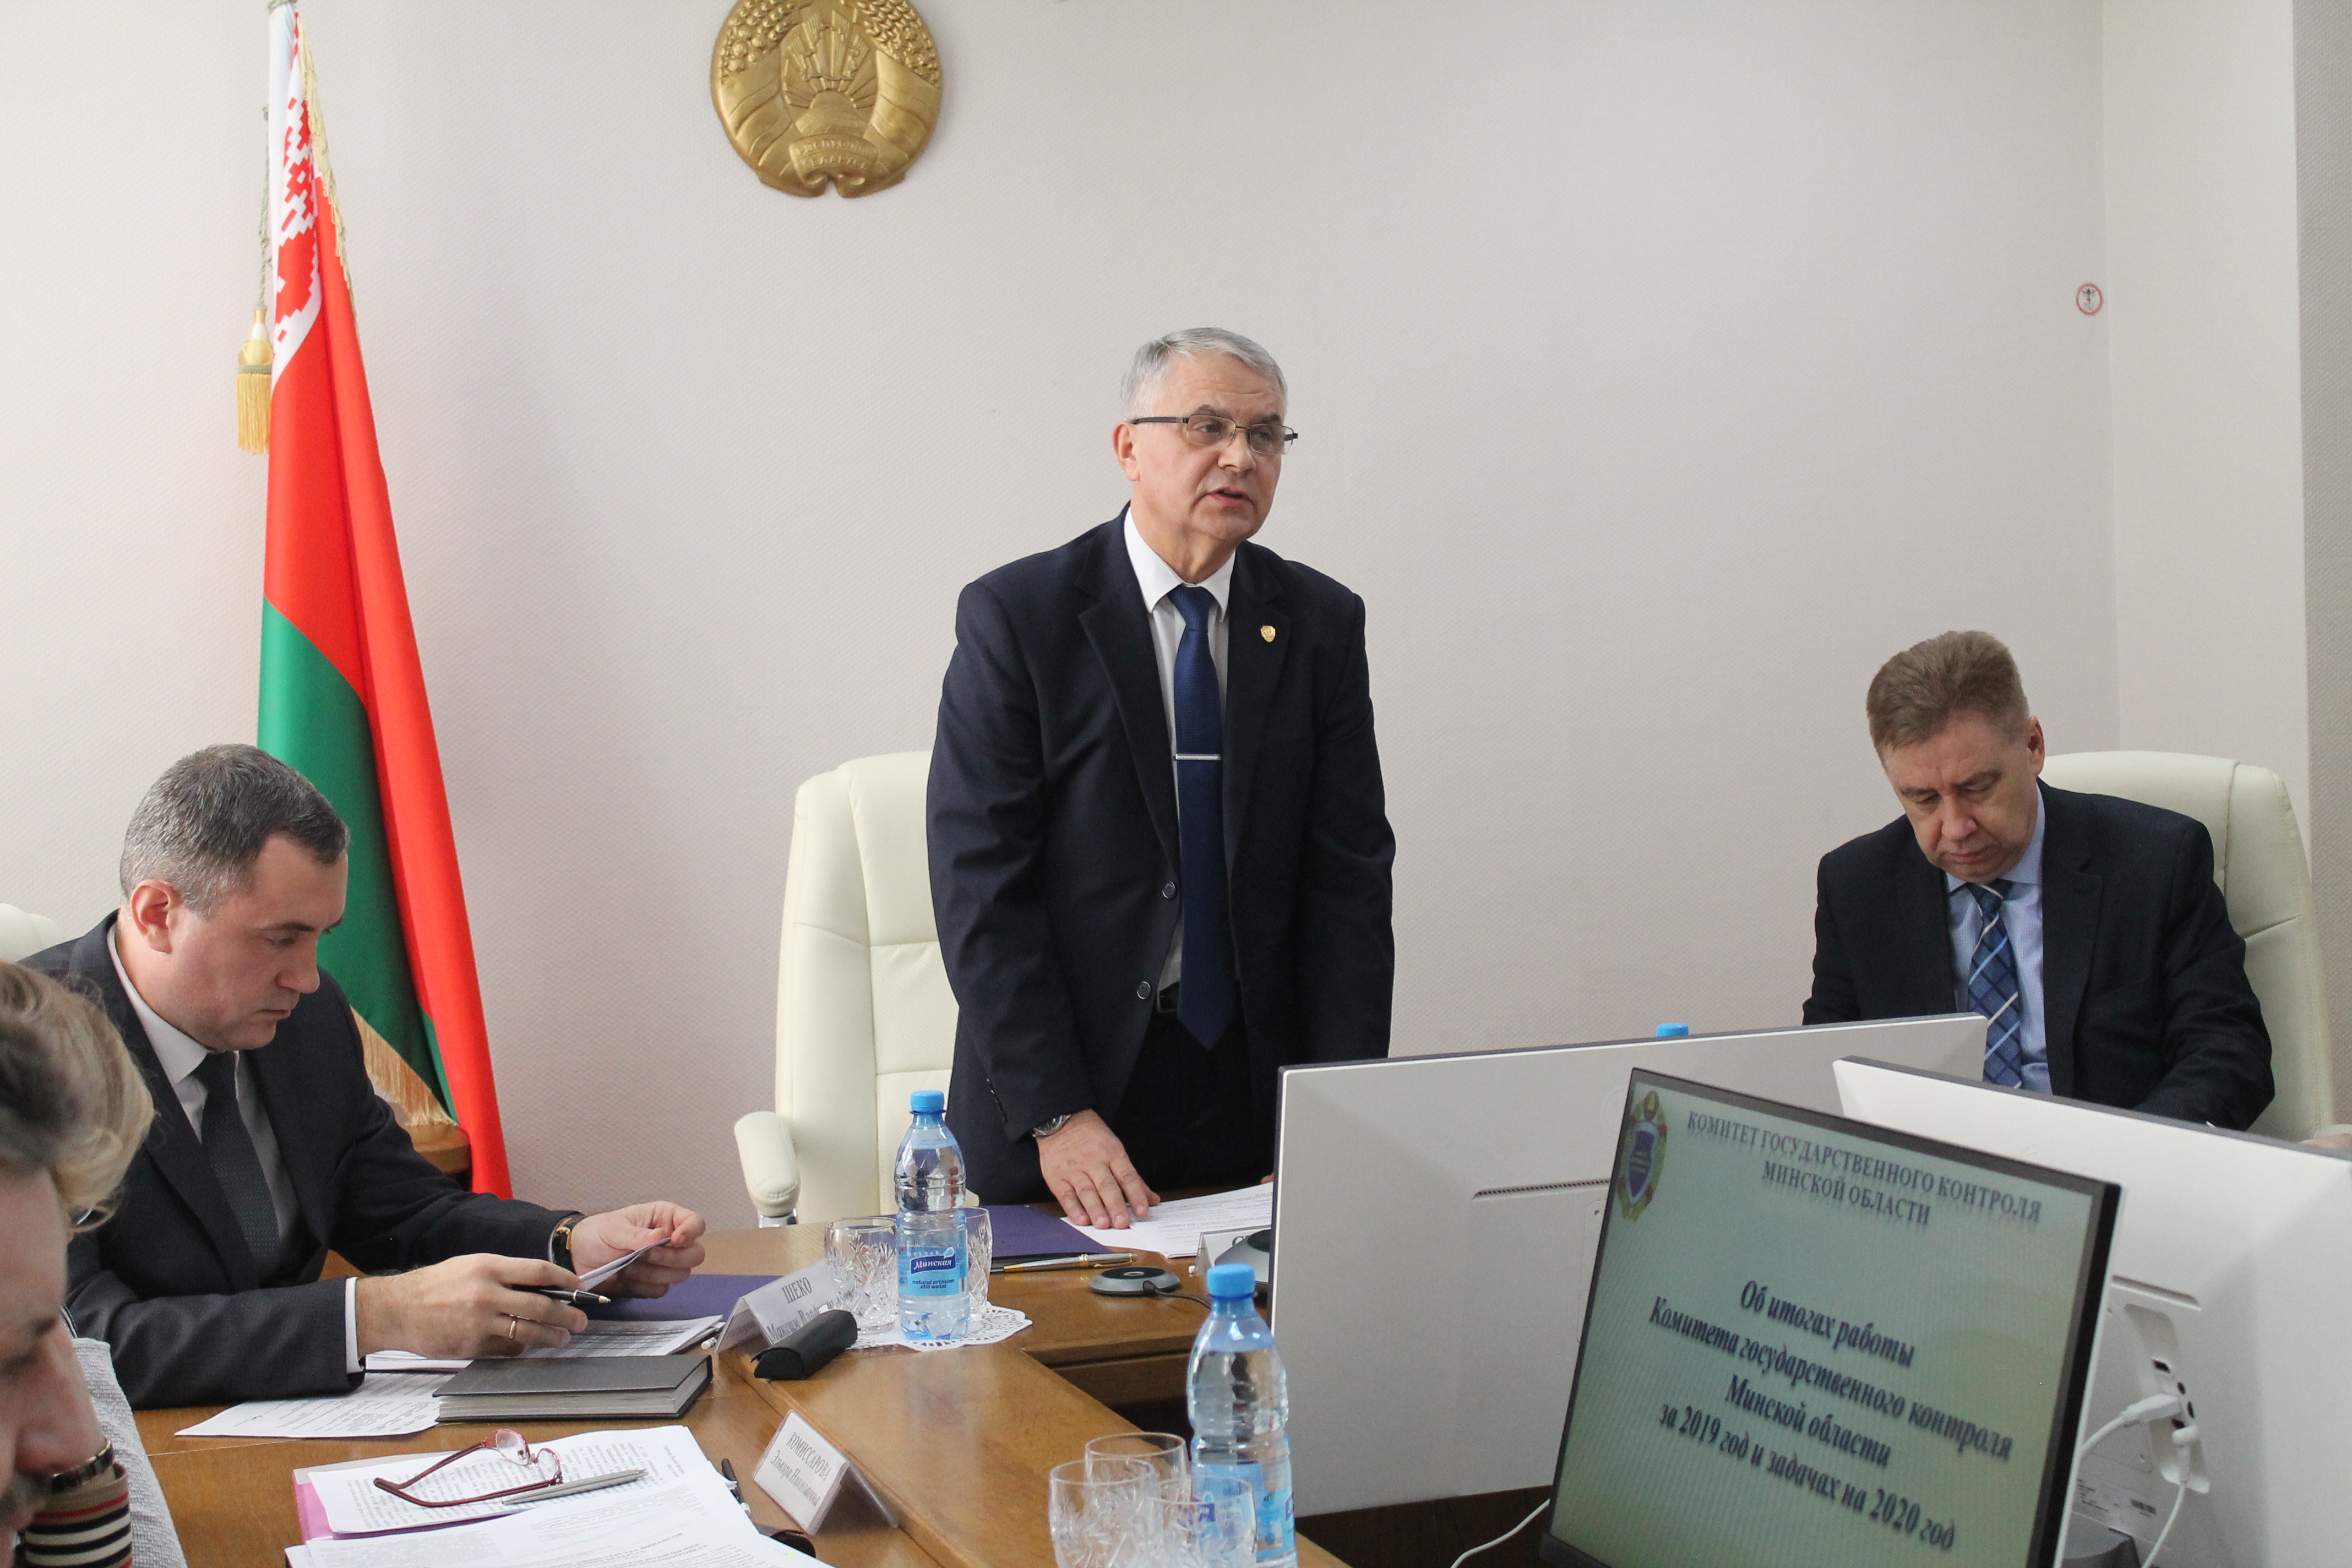 Итоги работы Комитета государственного контроля Минской области за 2019 год рассмотрены на заседании коллегии